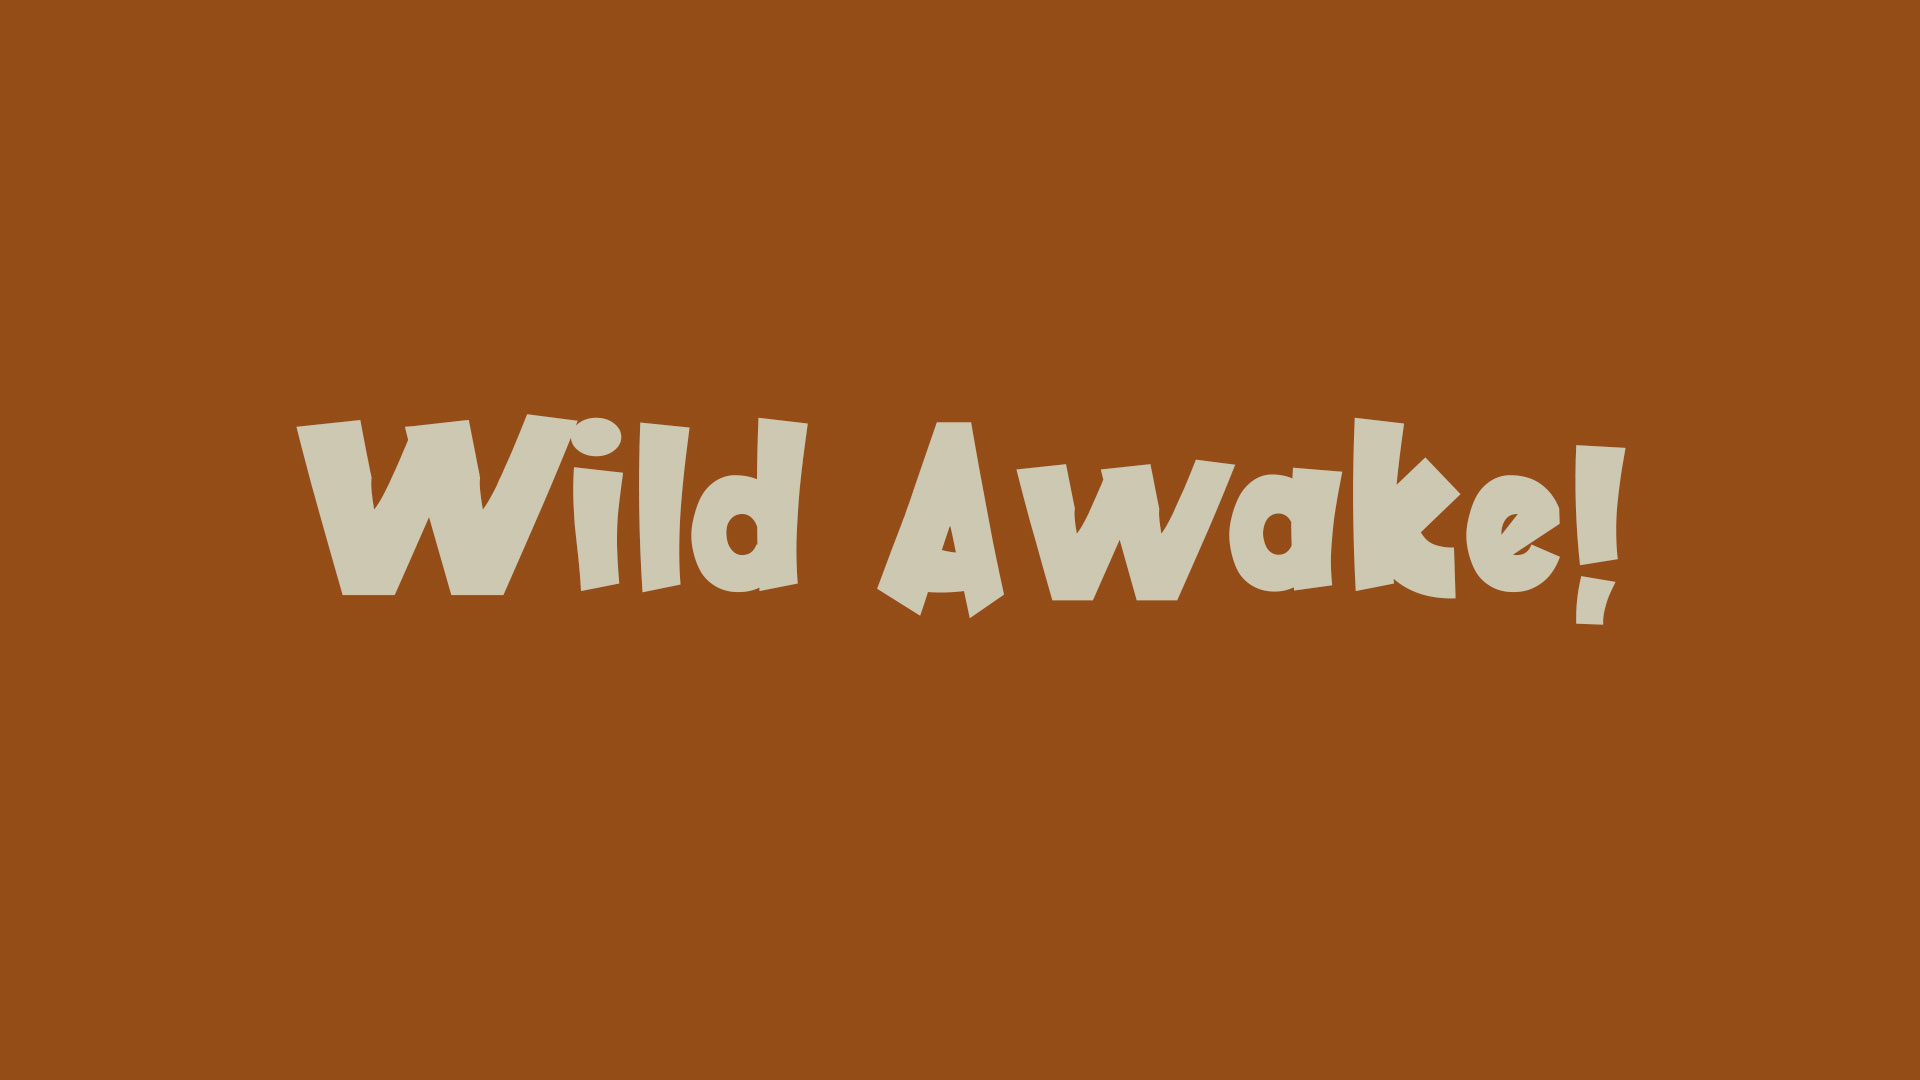 Wild Awake!